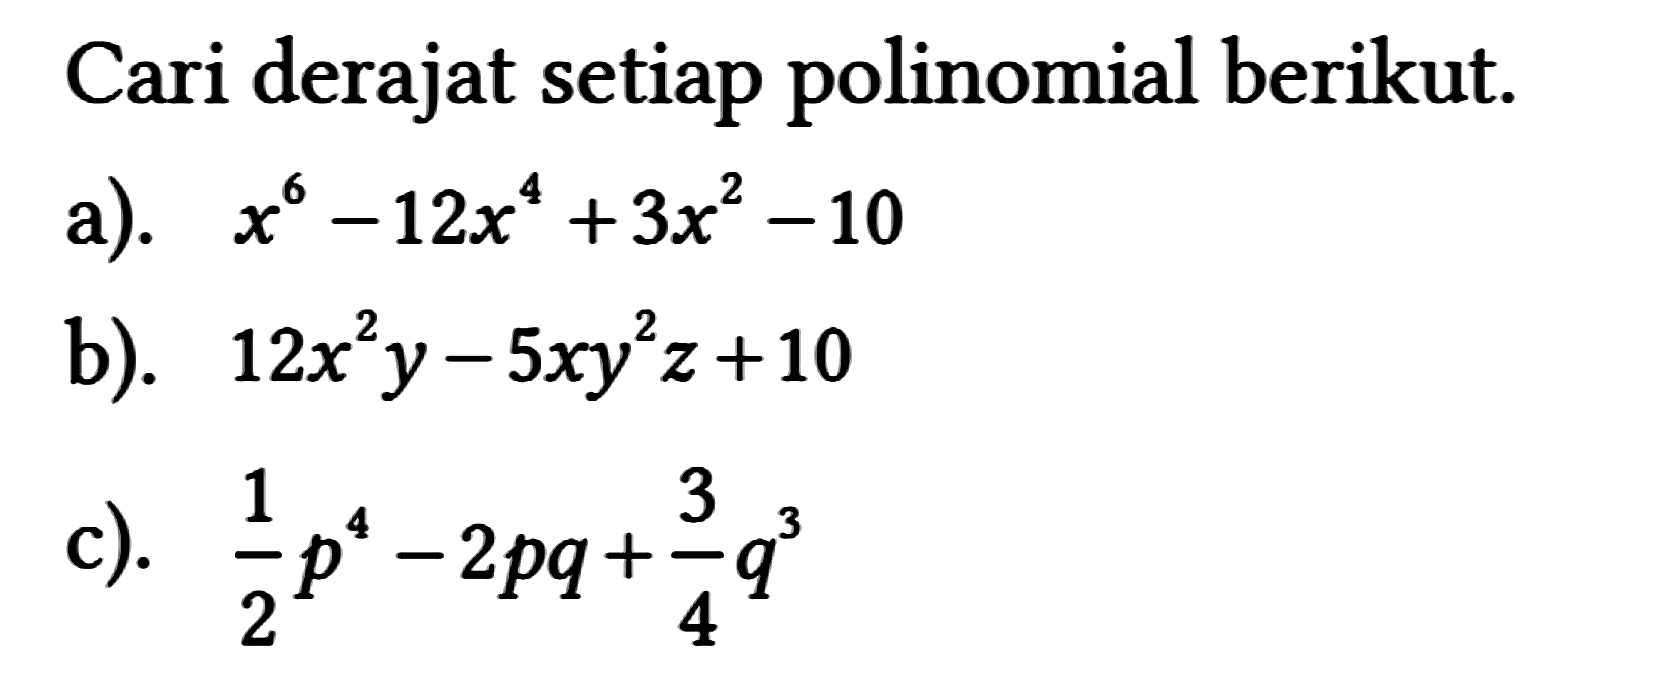 Cari derajat setiap polinomial berikut.
 a). x^(6)-12 x^(4)+3 x^(2)-10 
 b). 12 x^(2) y-5 x y^(2) z+10 
 c). (1)/(2) p^(4)-2 p q+(3)/(4) q^(3)